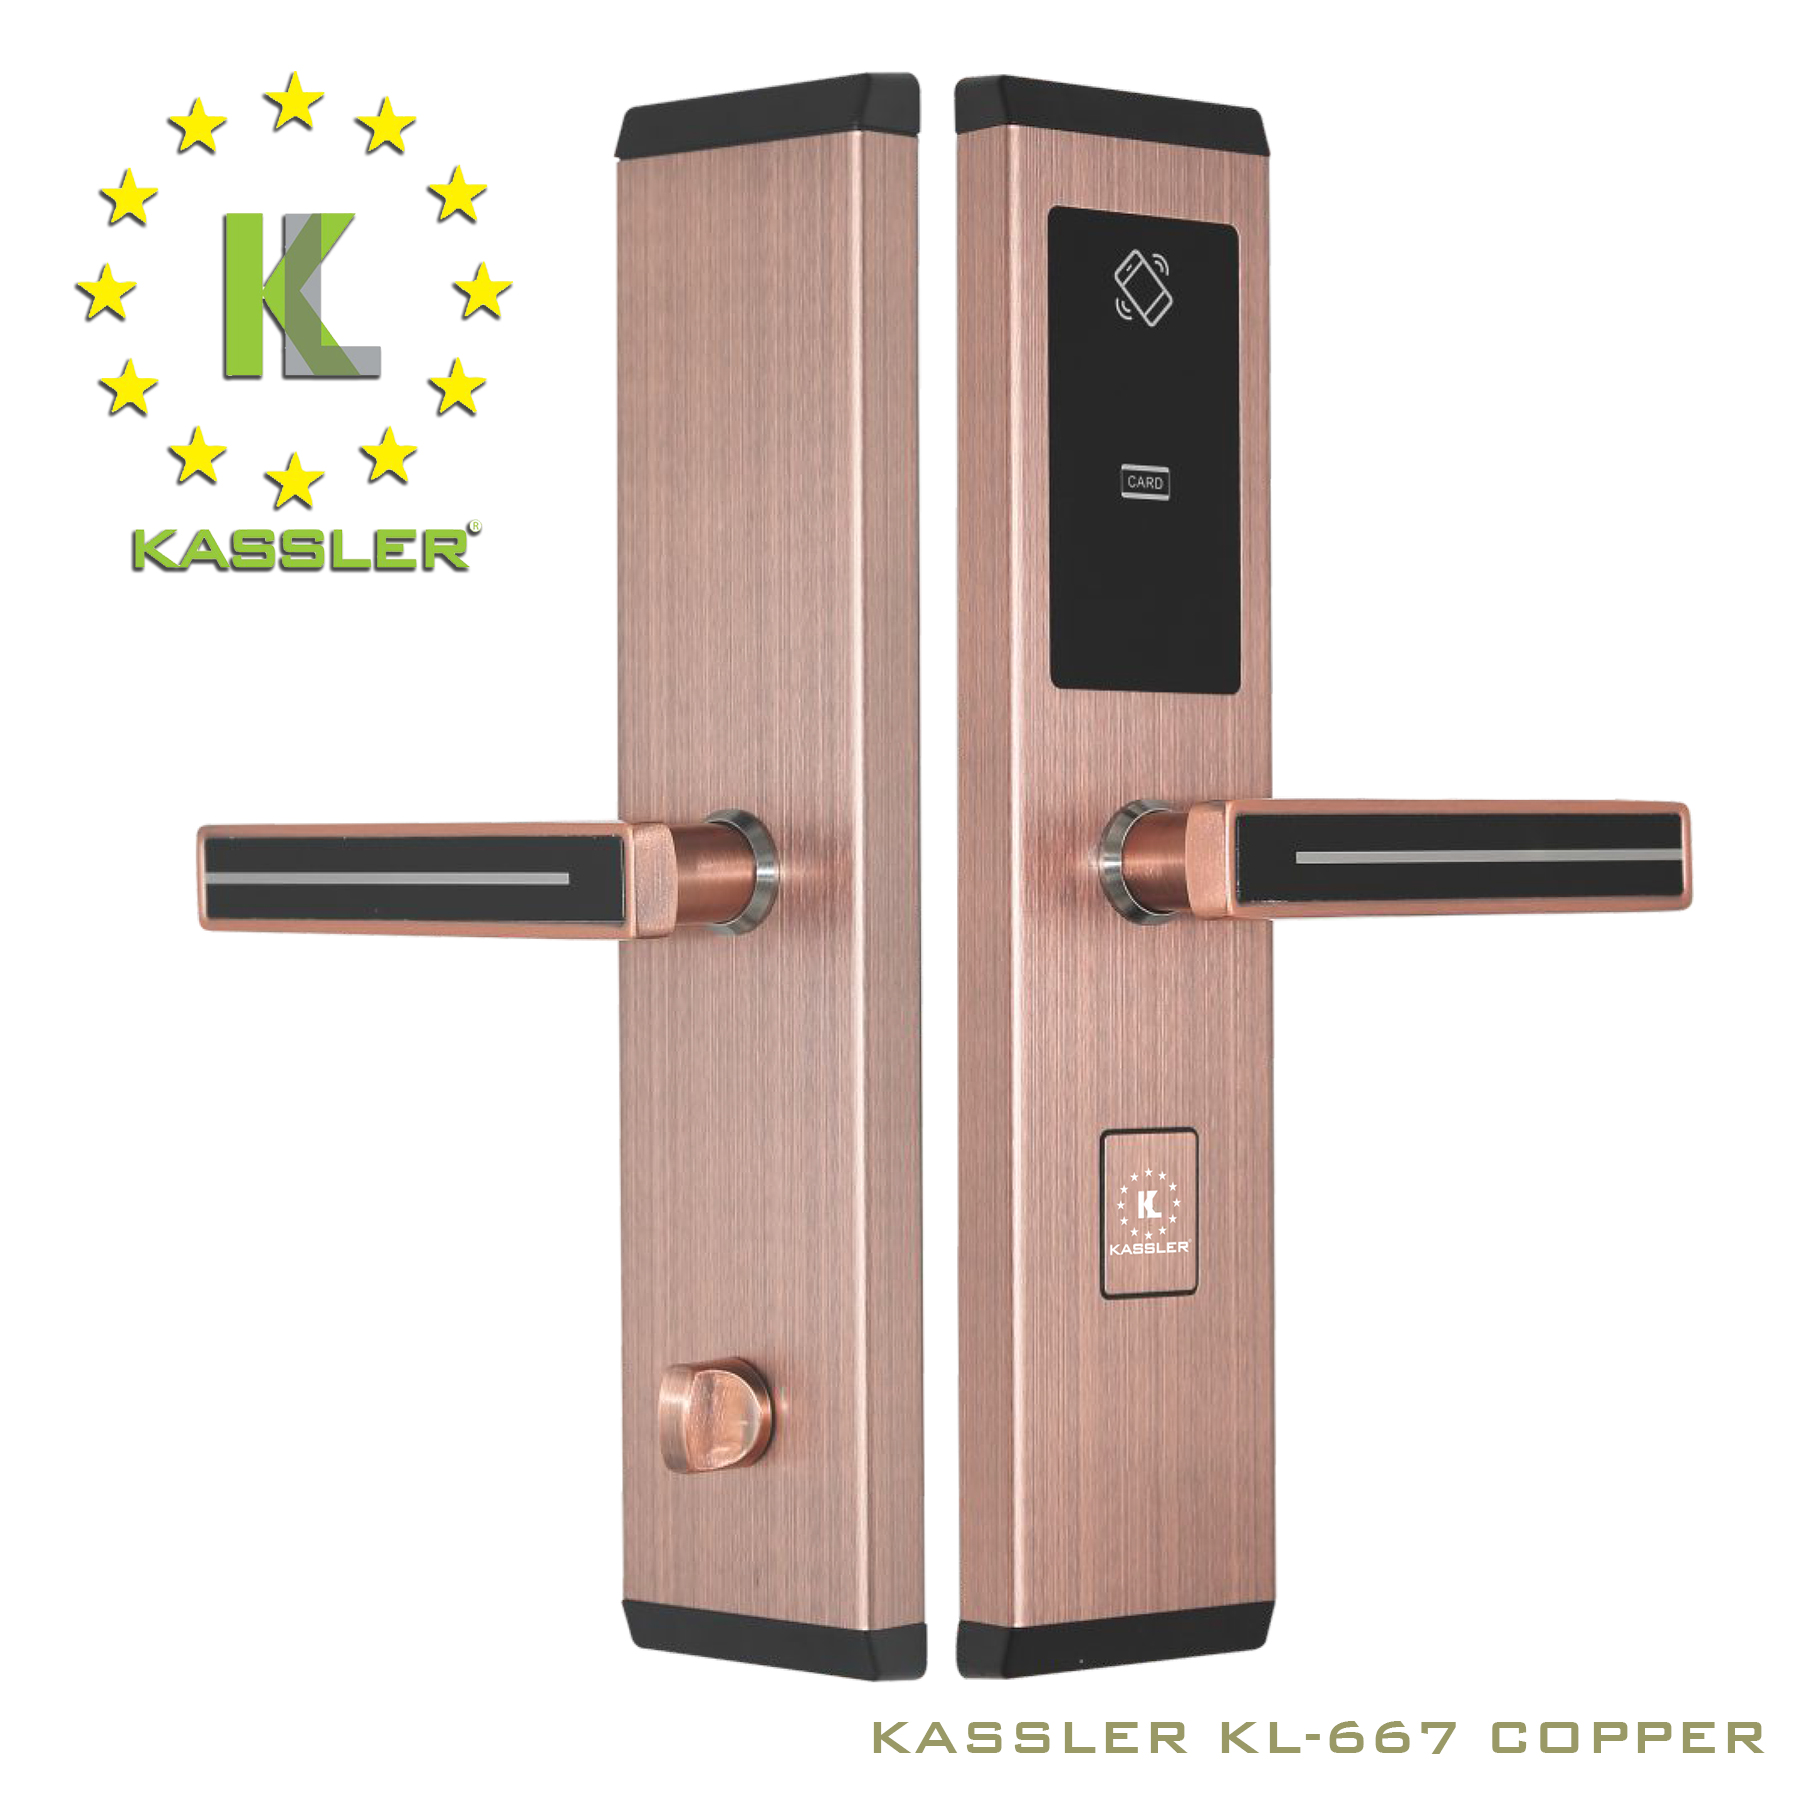 Kassler-KL-667-copper